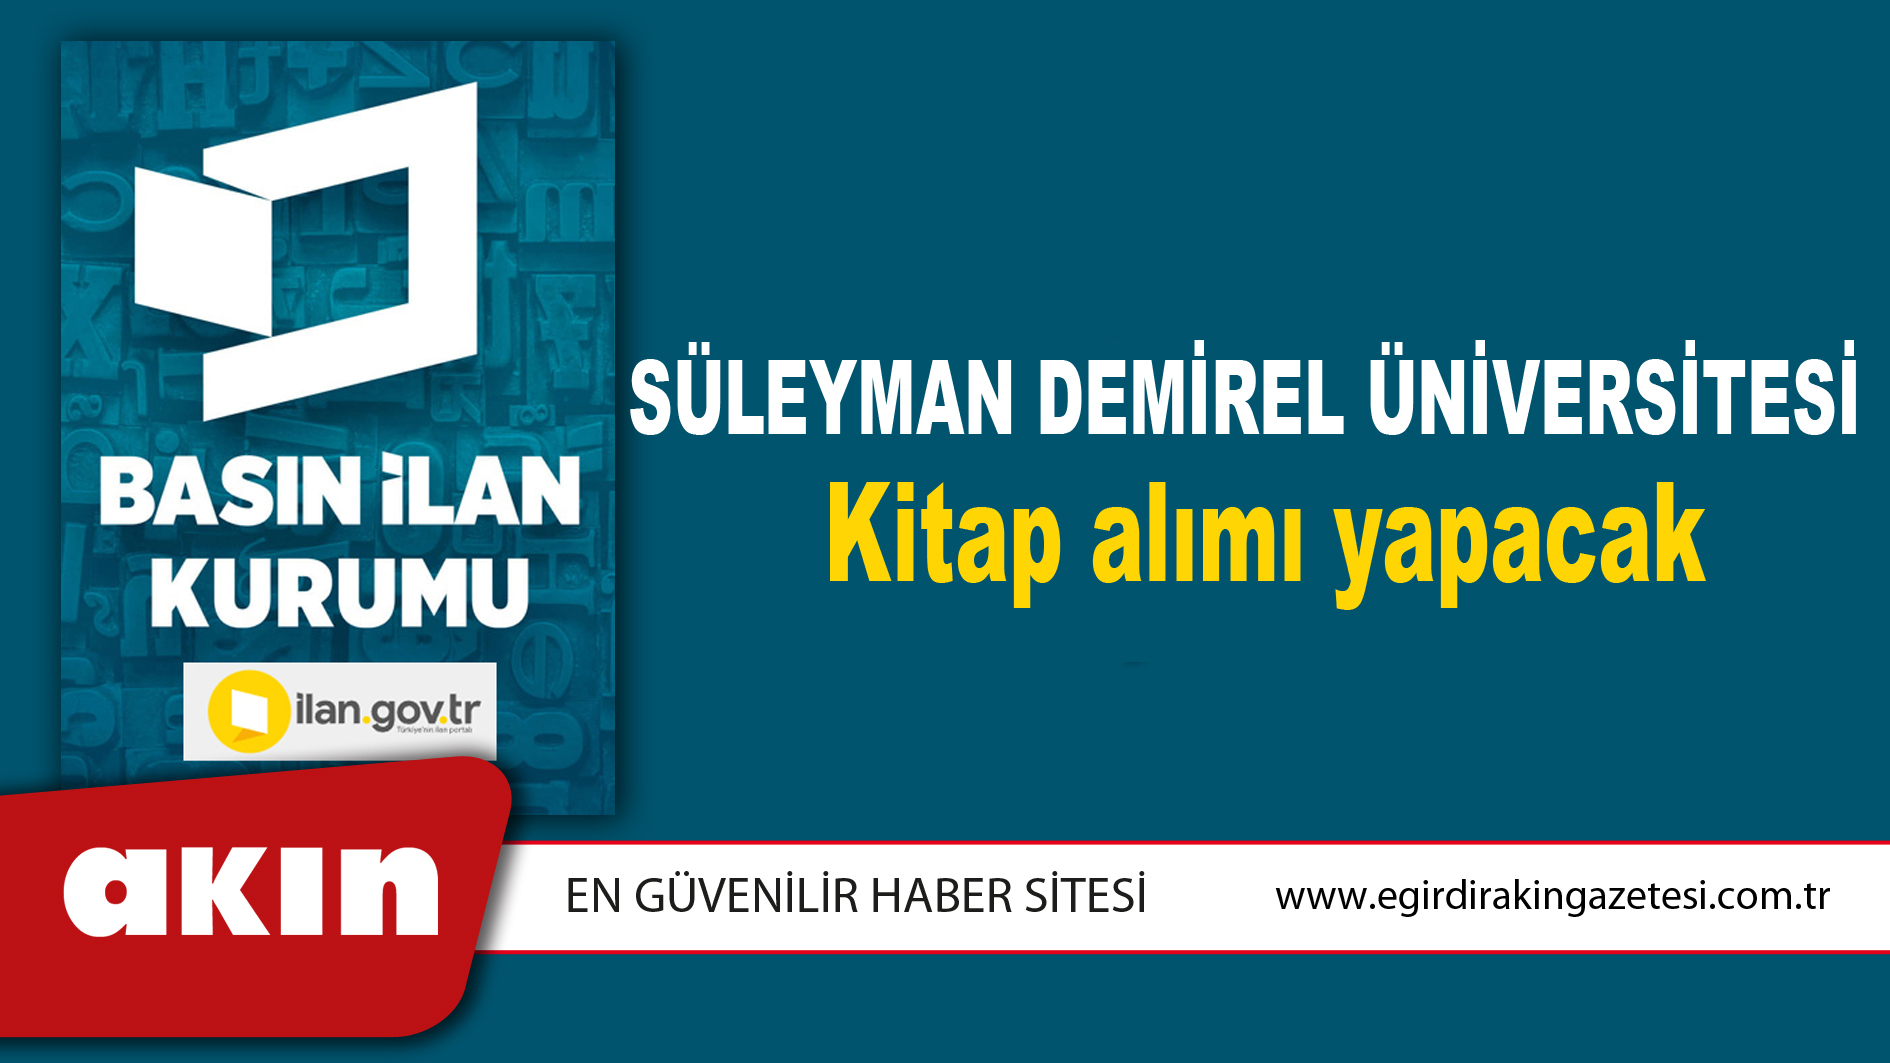 Süleyman Demirel Üniversitesi Kitap alımı yapacak